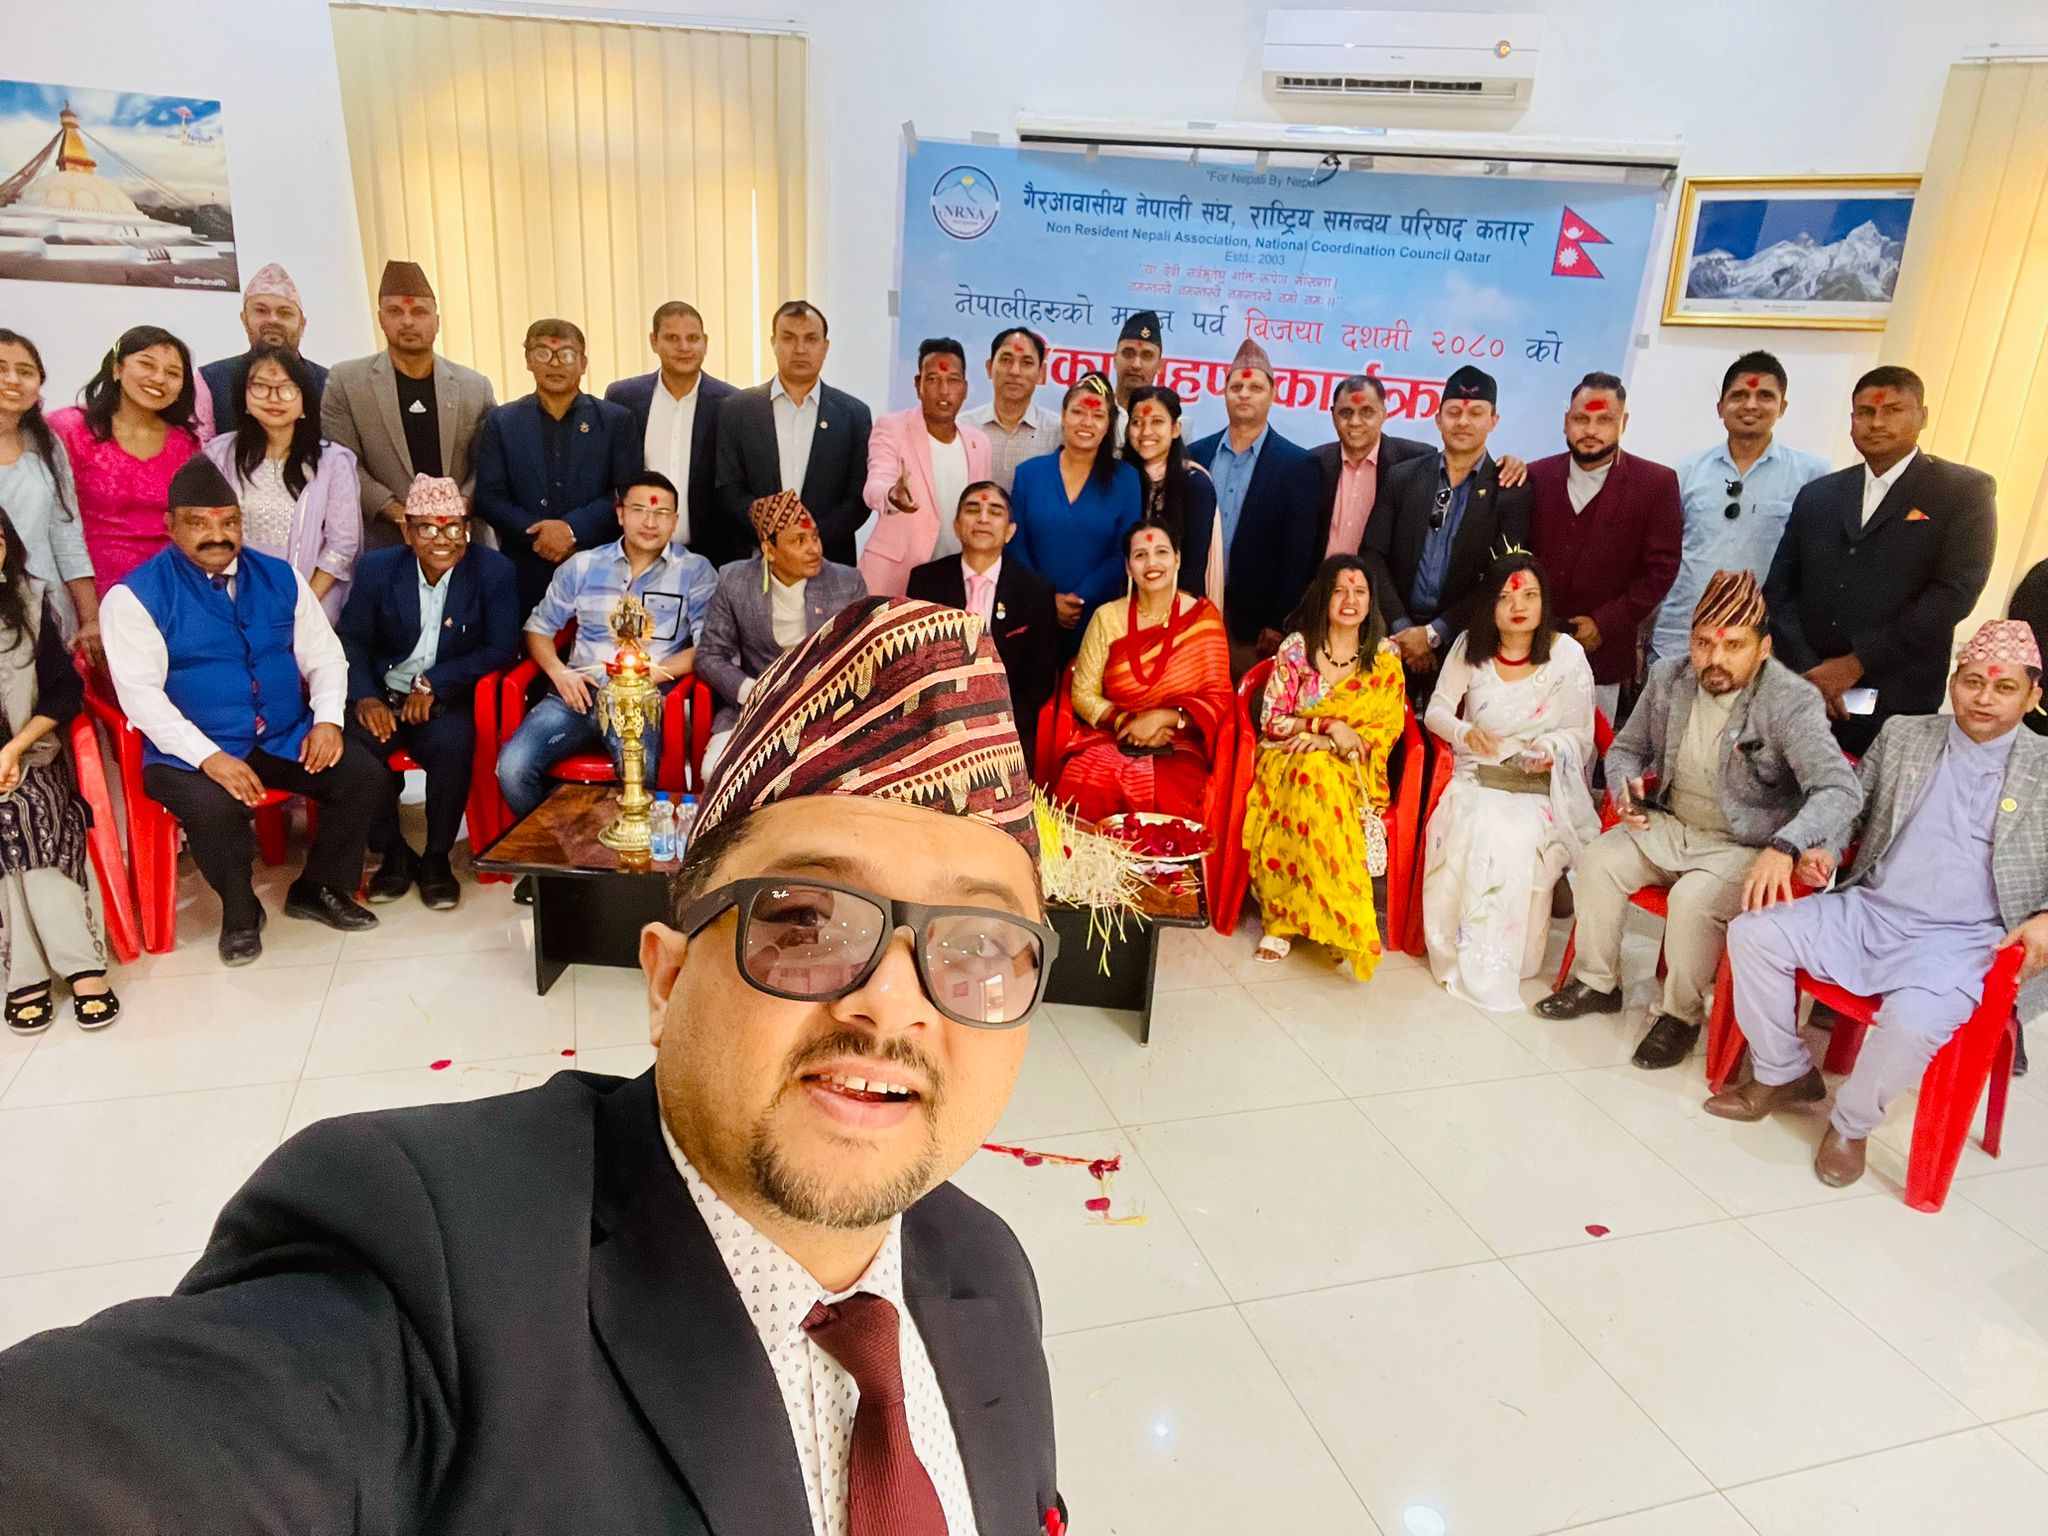 नेपालीहरुको महान पर्व विजया दशमीको पावन अवसरमा गैरआवासीय नेपाली संघ, राष्ट्रिय समन्वय परिषद कतारको आयोजनामा टिका ग्रहण कार्यक्रम